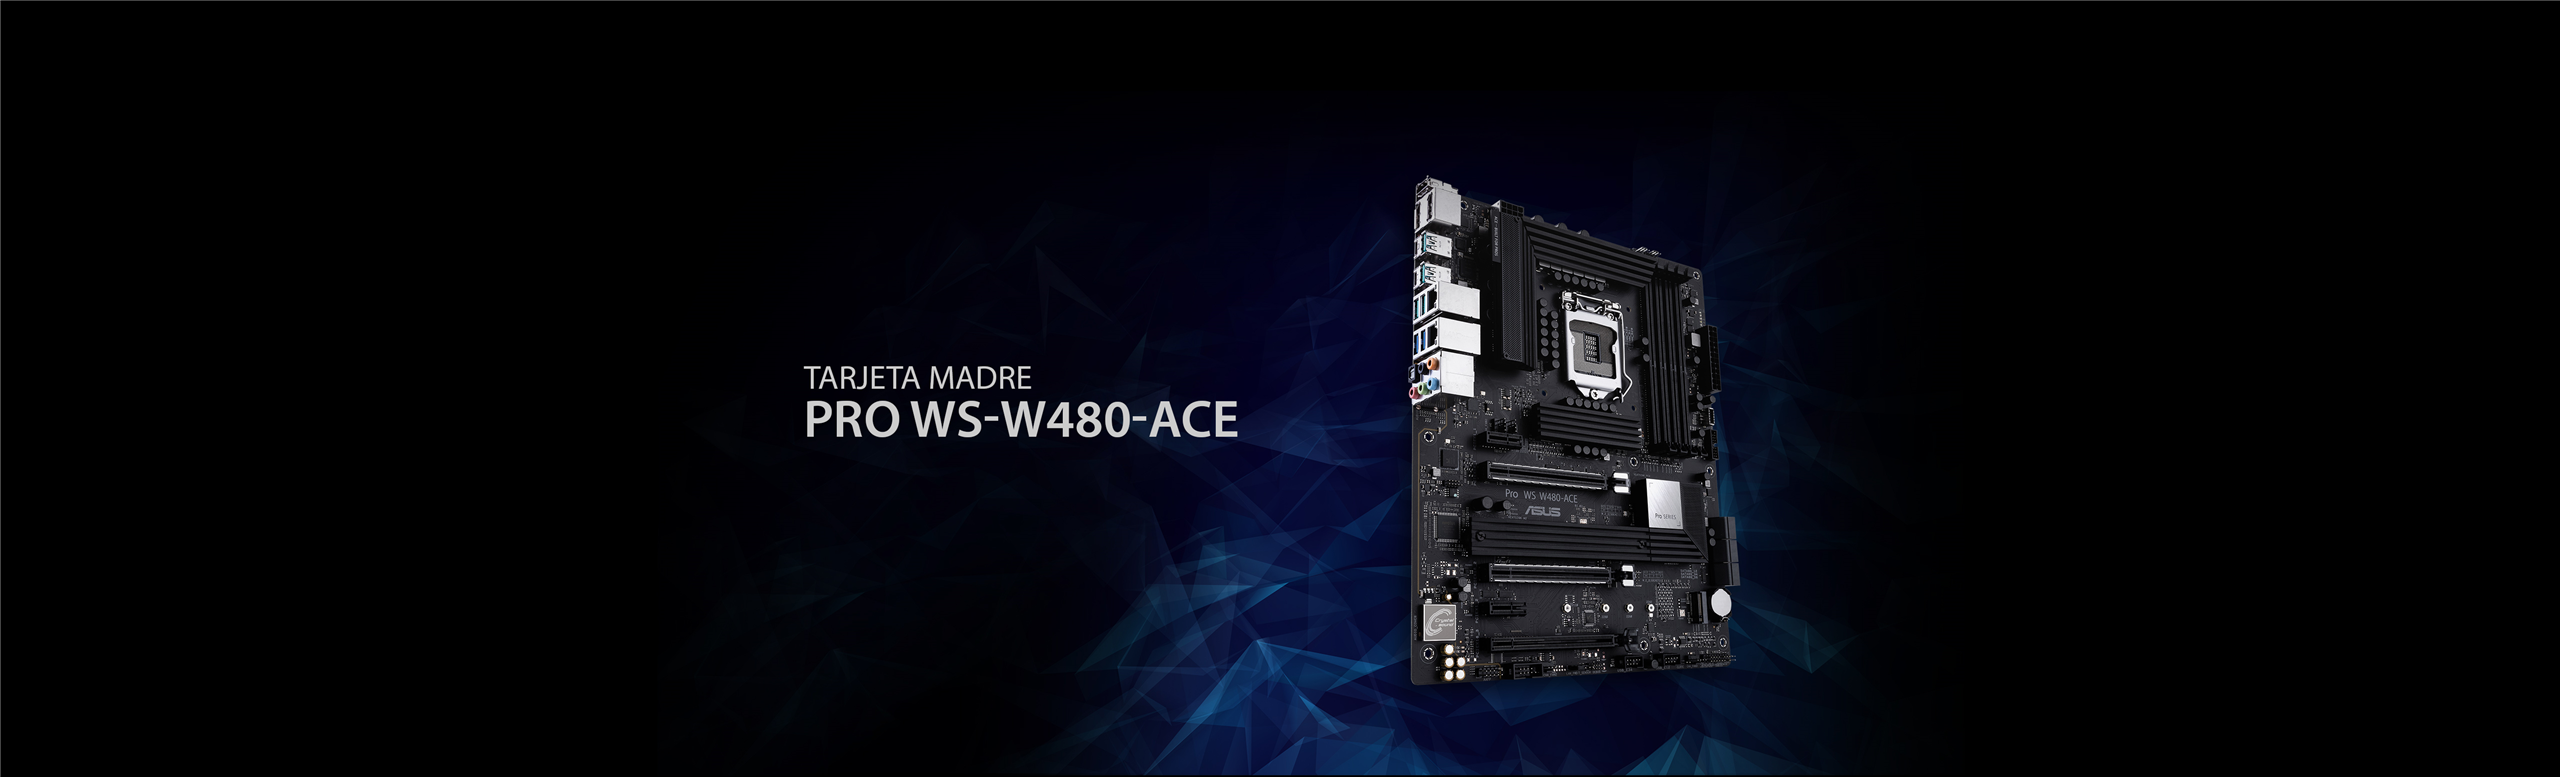 Pro WS W480-ACE